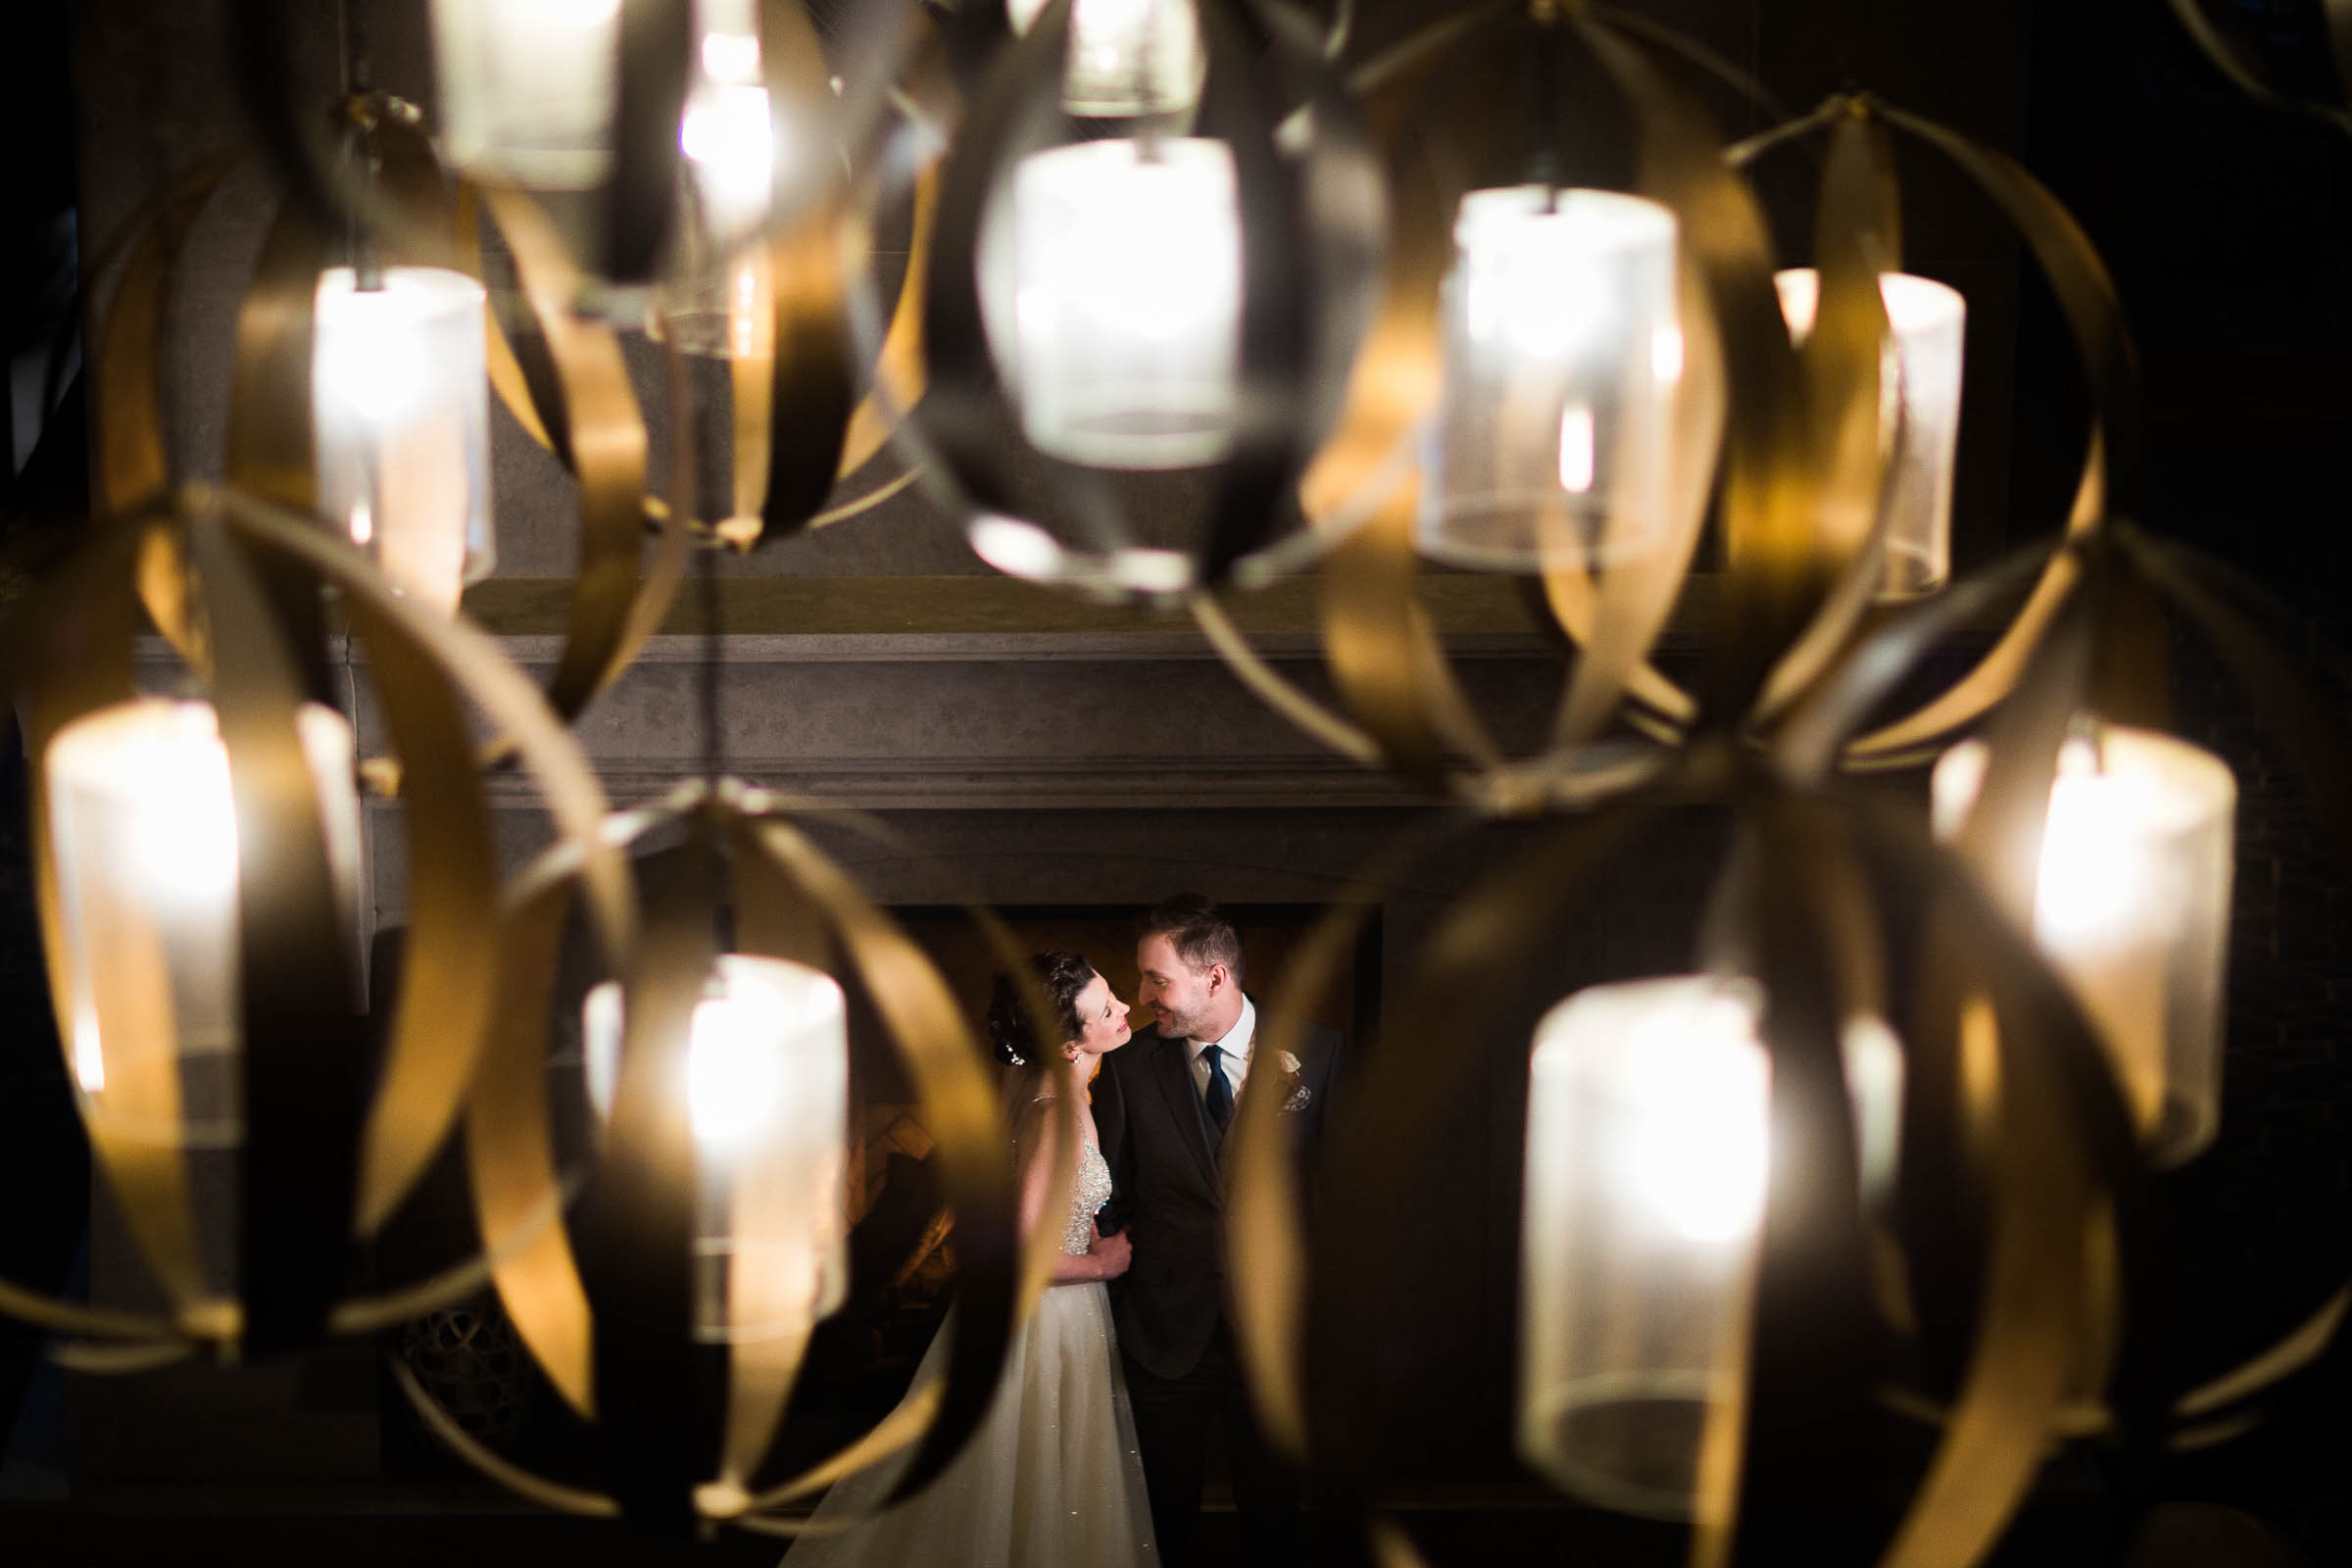 Peek of bride and groom through chandelier